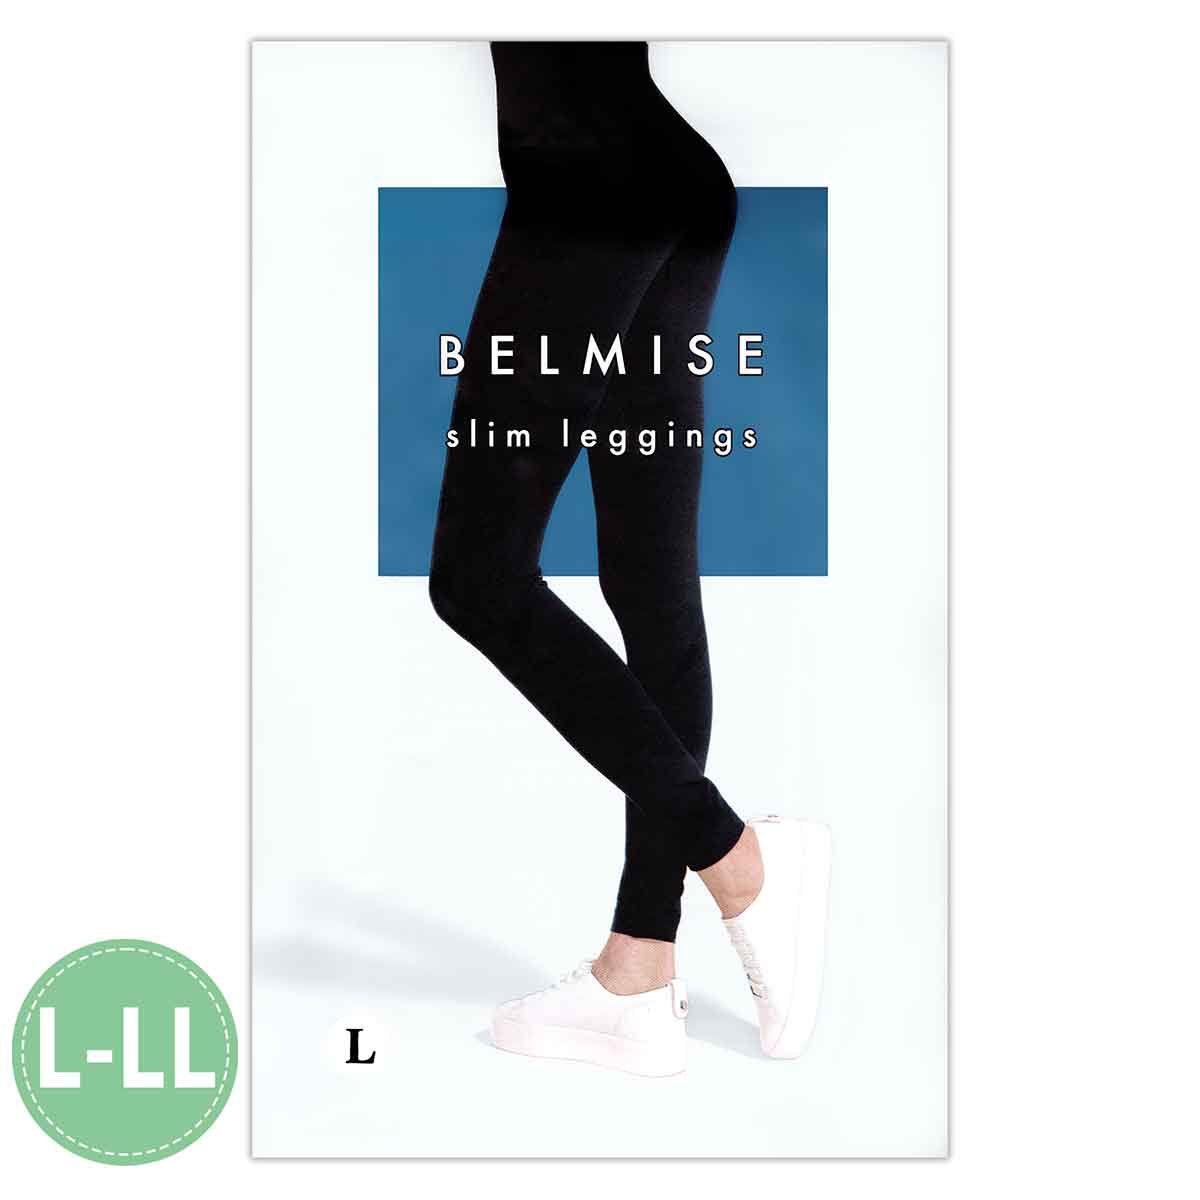 ベルミス スリムレギンス BELMISE Slim leggings L-LLサイズ L LLサイズ メール便送料無料NYH /  ベルミスレギンスLS04-03 / BMLGSL-01P